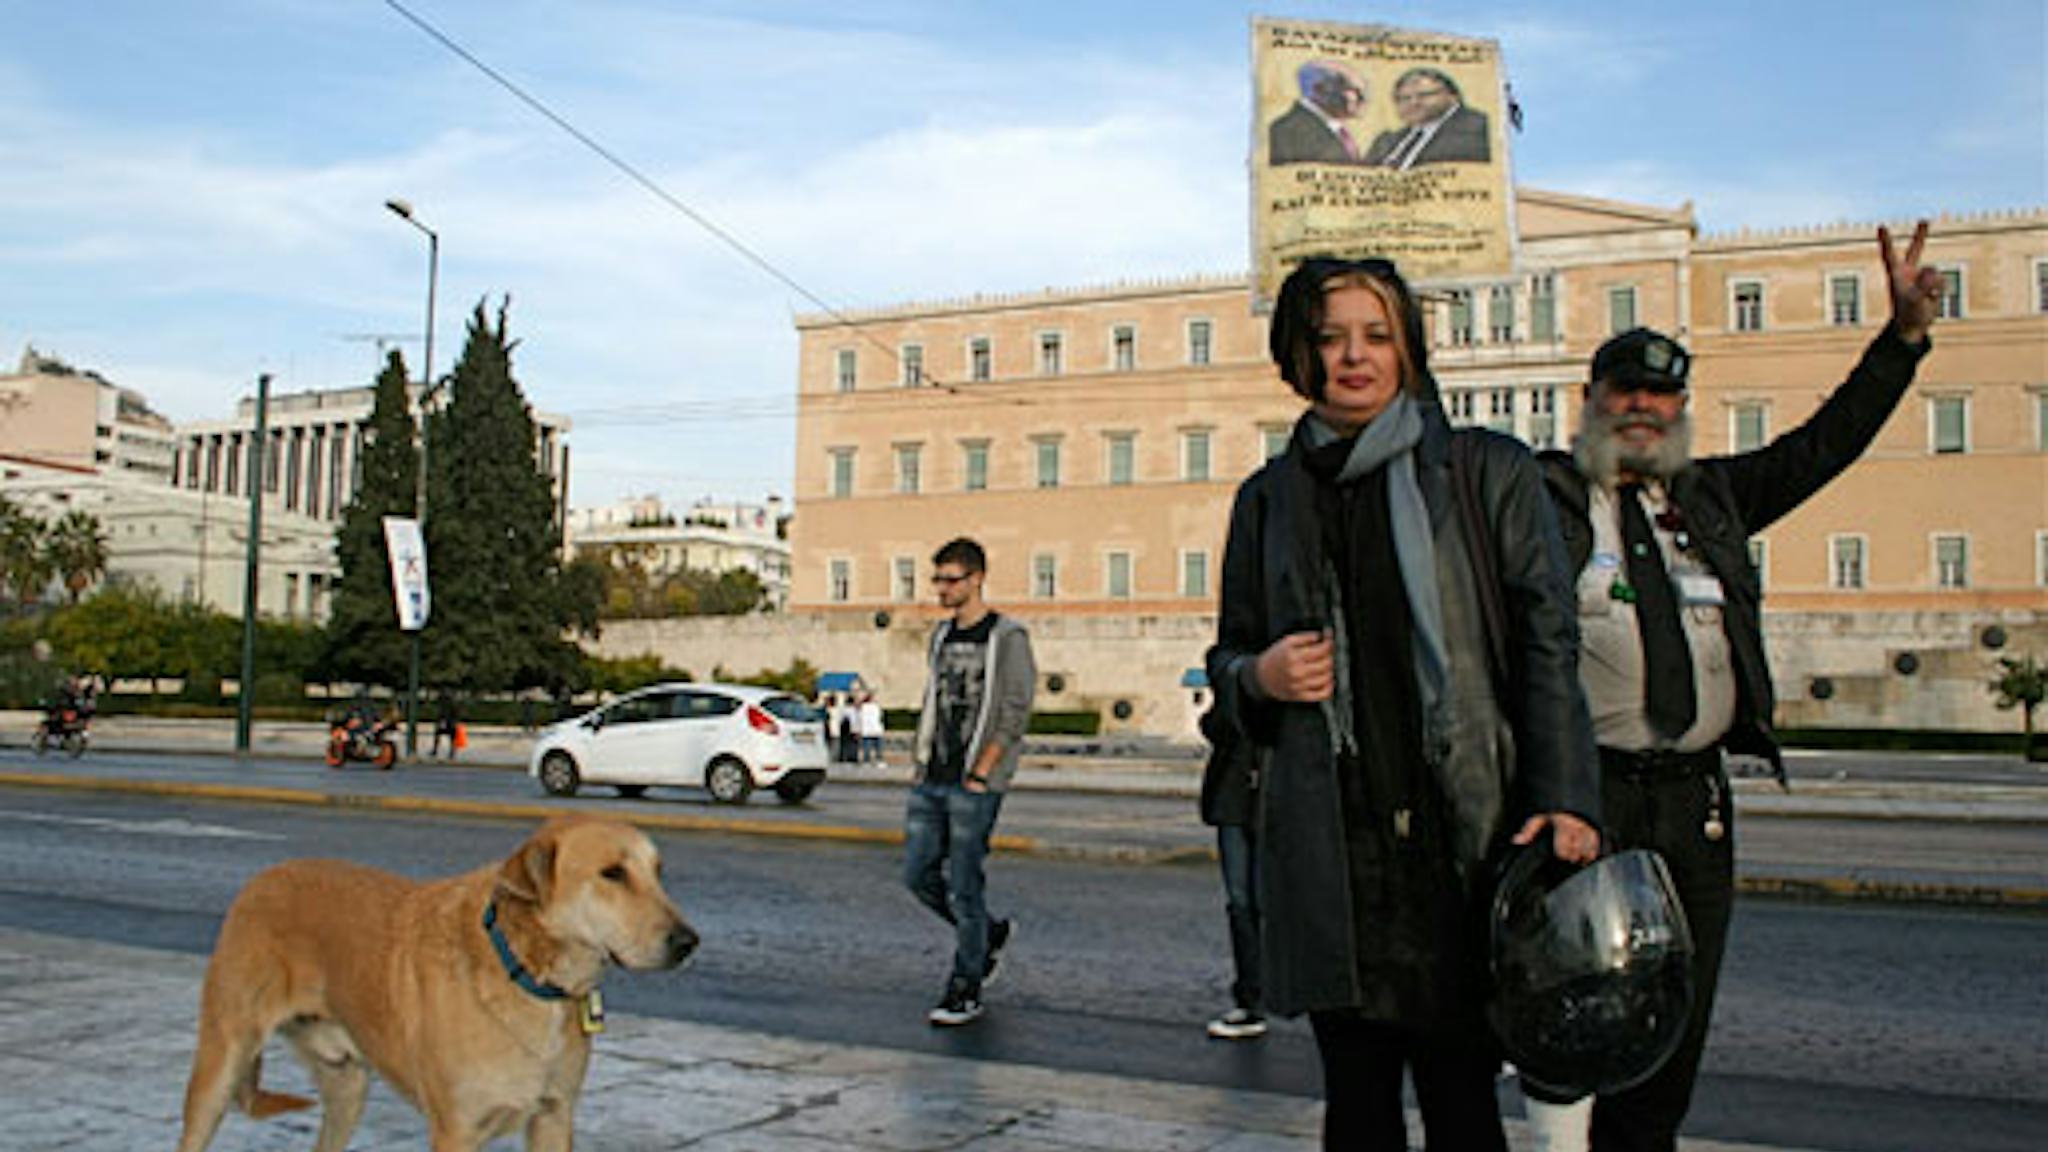 ”Det finns pengar” står det på en lapp som Lefteris Koudylis satt upp utanför det grekiska parlamentet. Han syftar på vad Giorgos Papandreou sa i en valdebatt 2009 då han förklarade att det var möjligt att satsa mer på den offentliga sektorn. – Vi ska betala, men vi måste ges en chans, säger Marina Apostolidou.